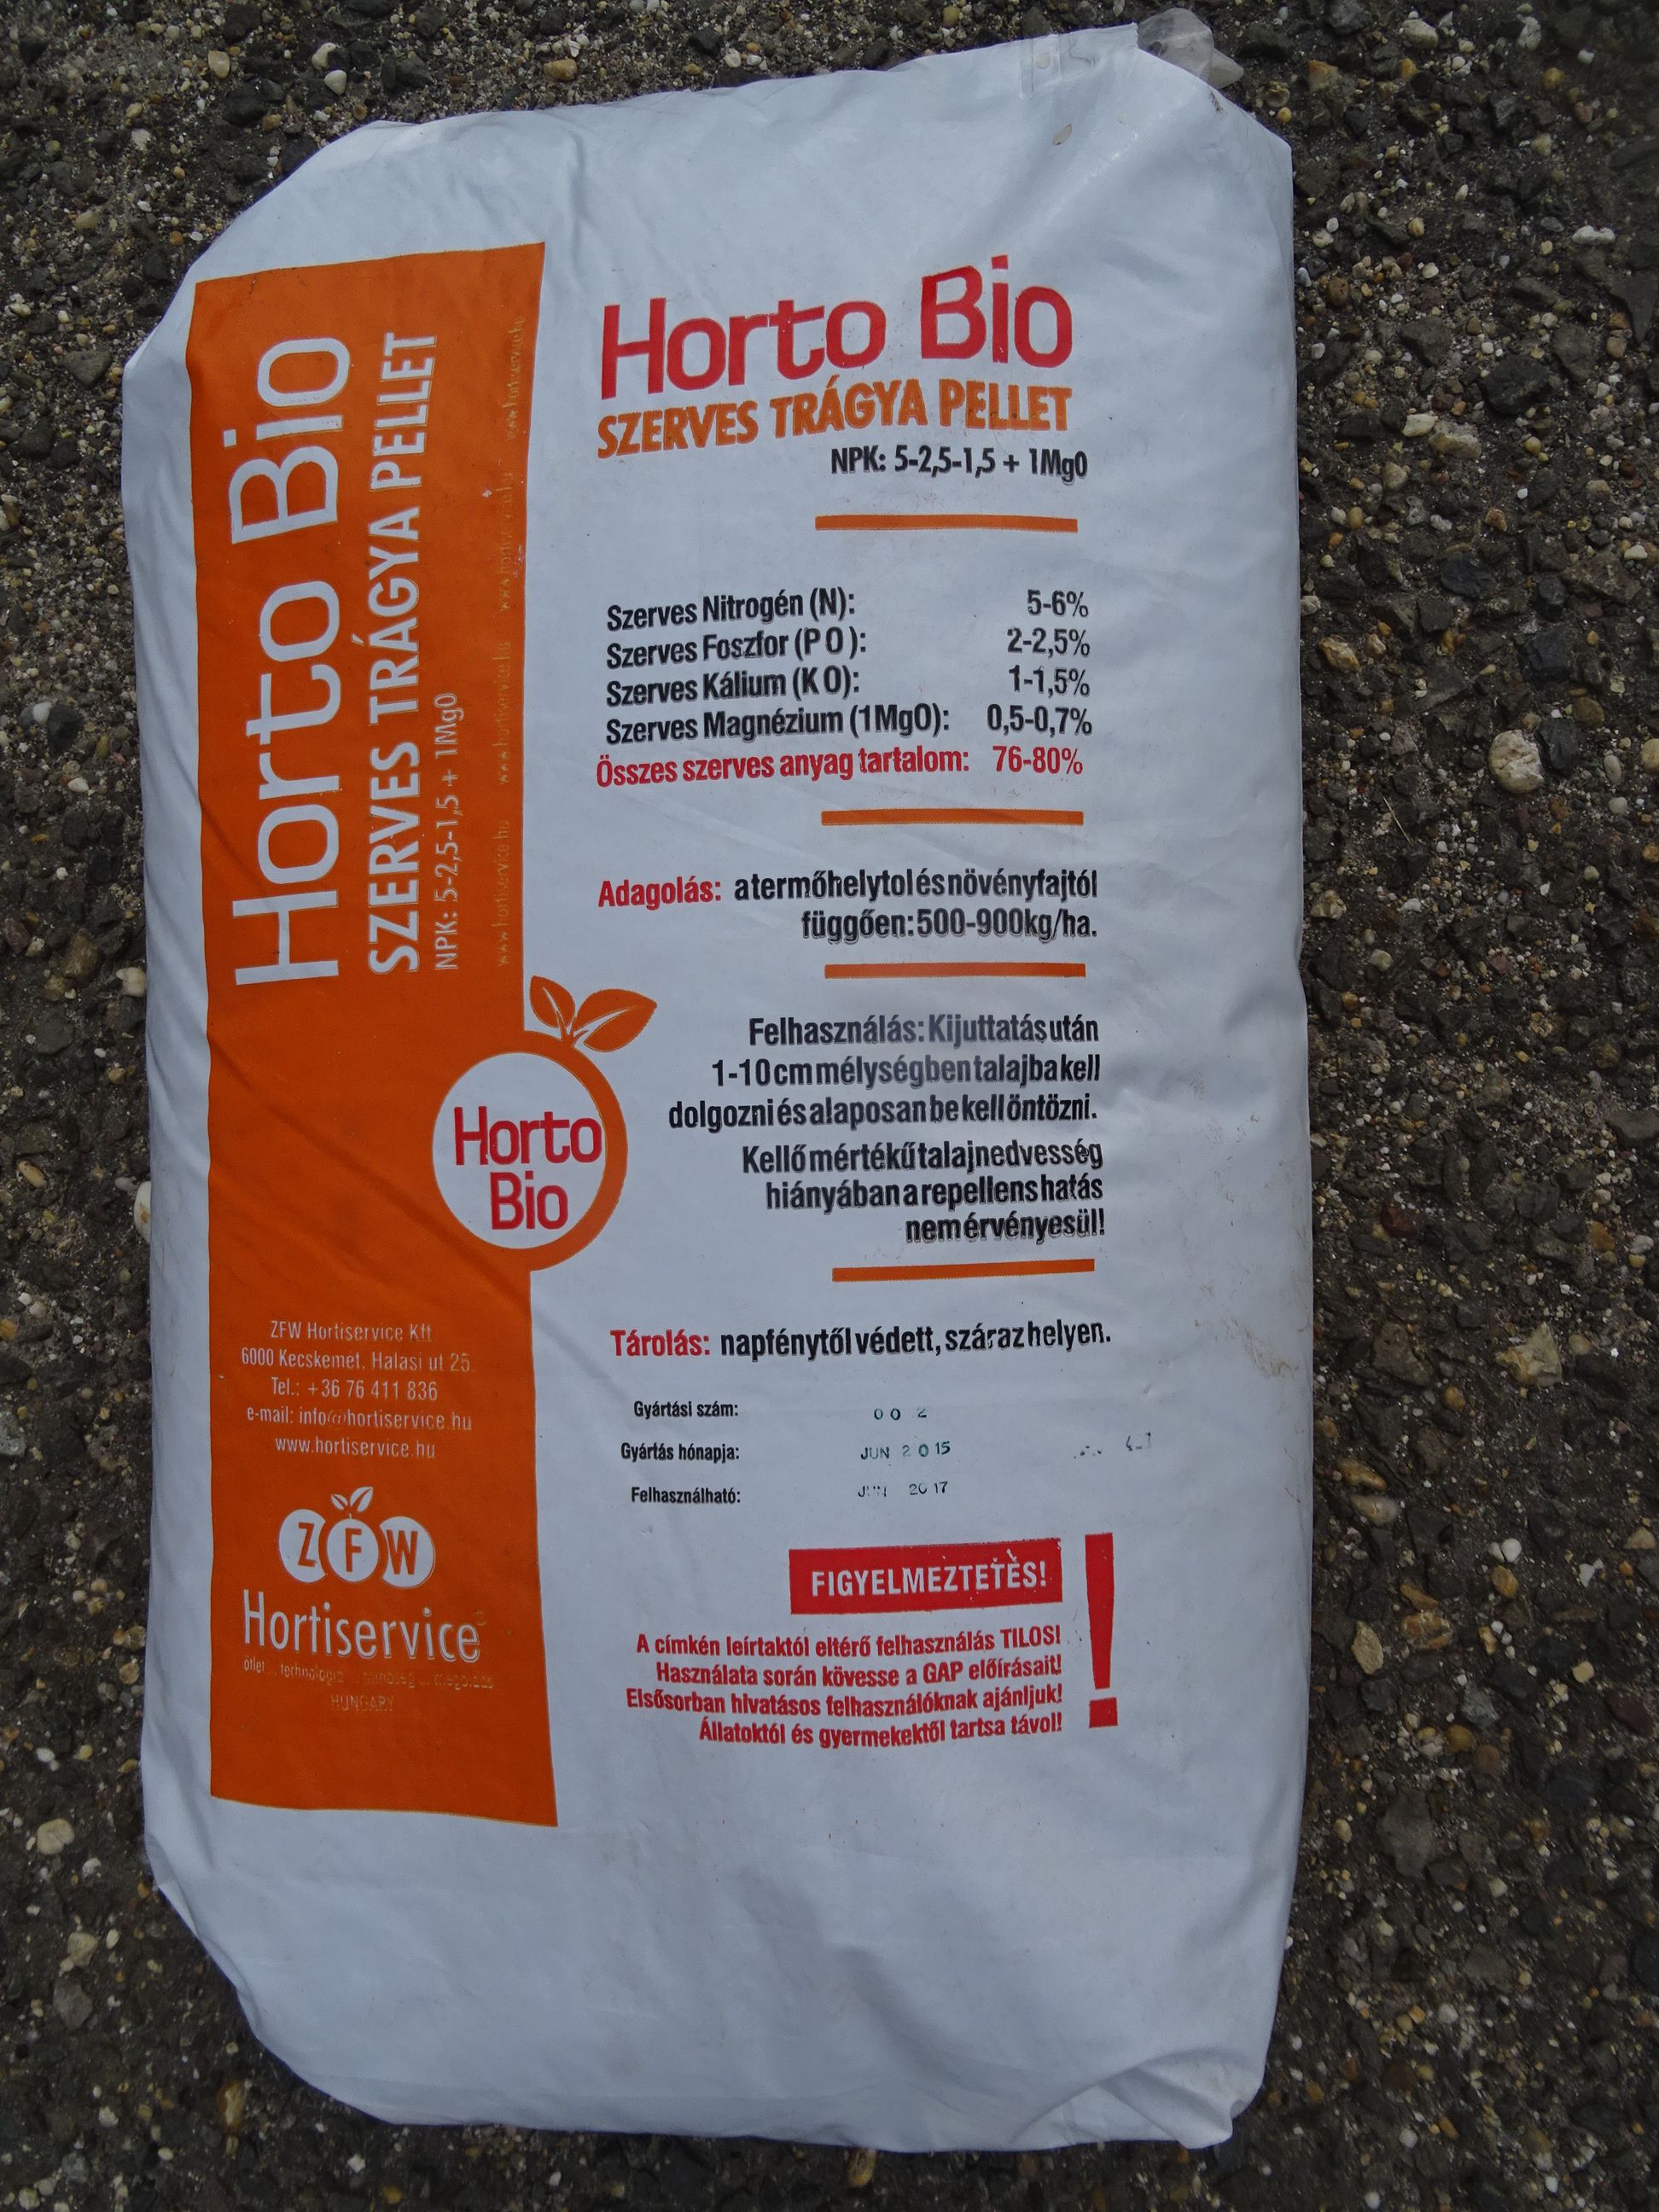 Horto-Biopellet szerves trágya 25 kg